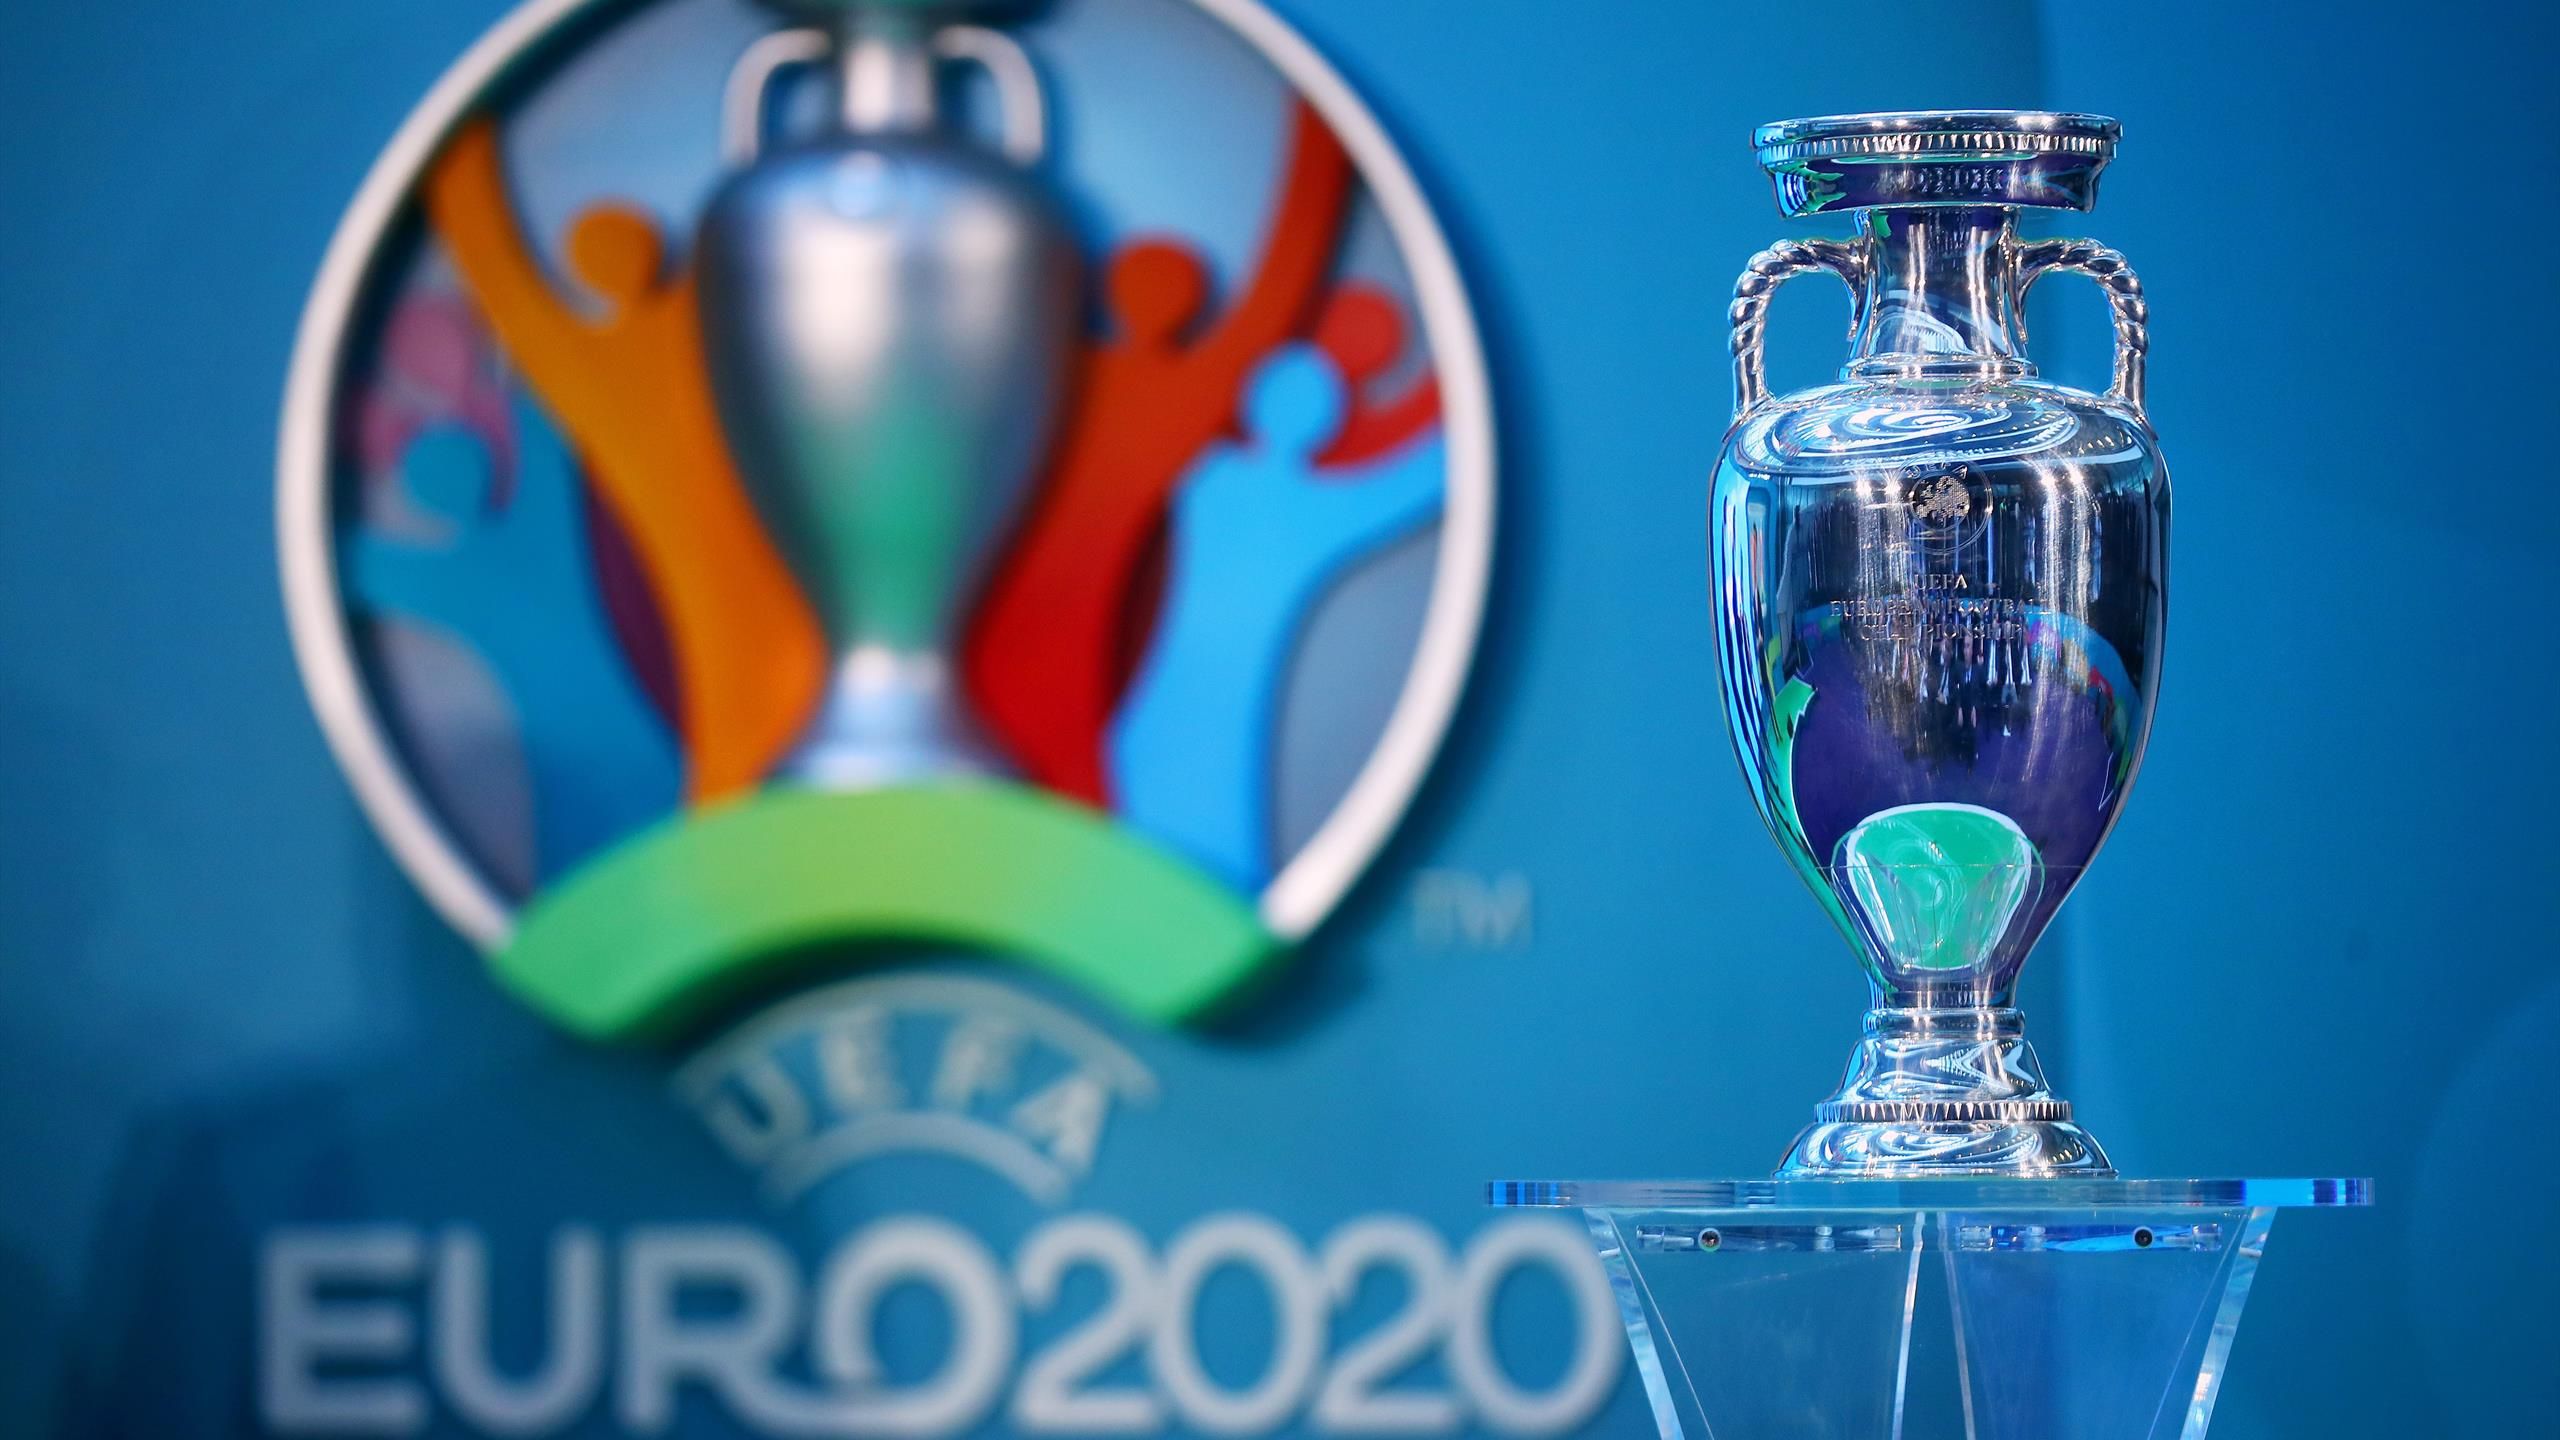 UEFA EURO 2020 Team of the Tournament revealed, UEFA EURO